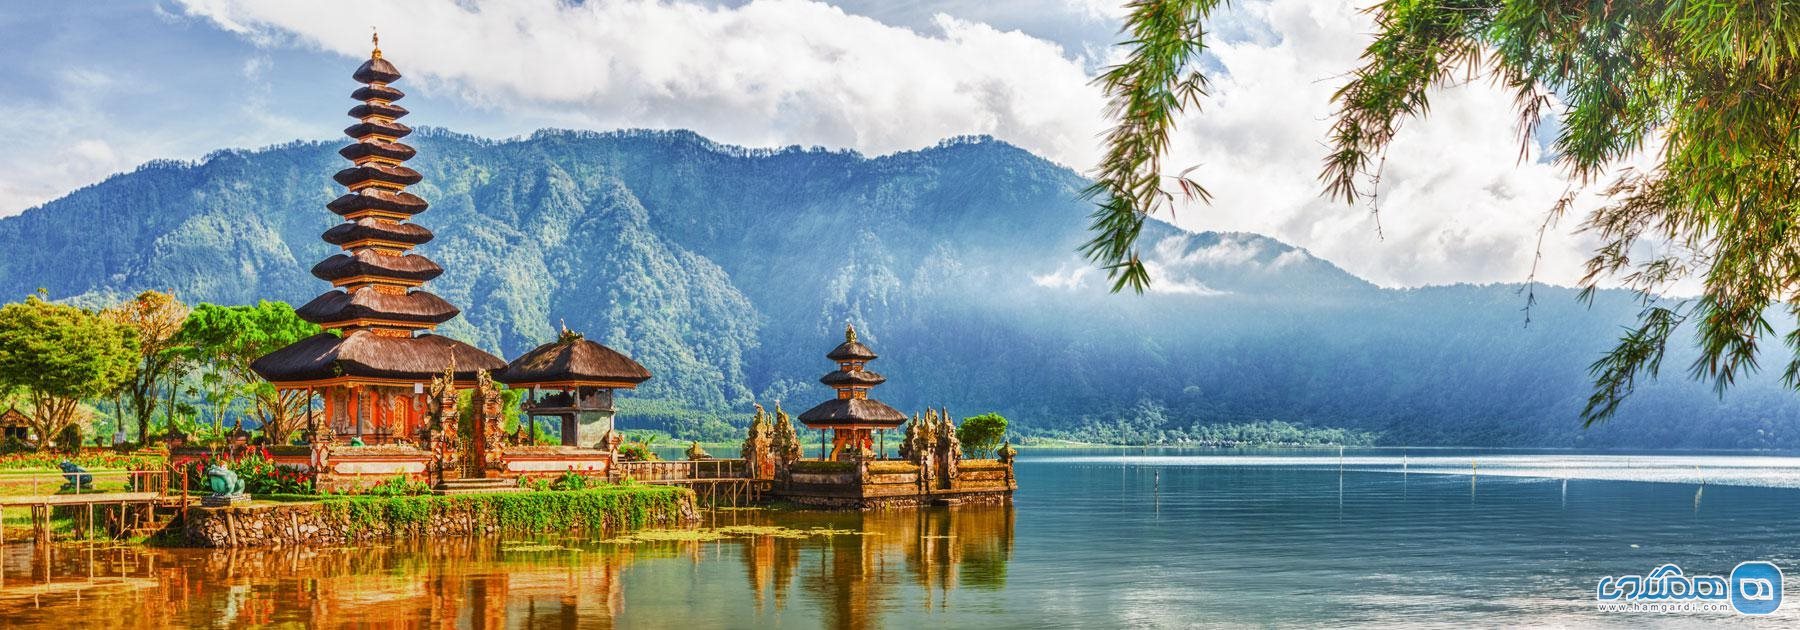 اندونزی با 5 دین رسمی